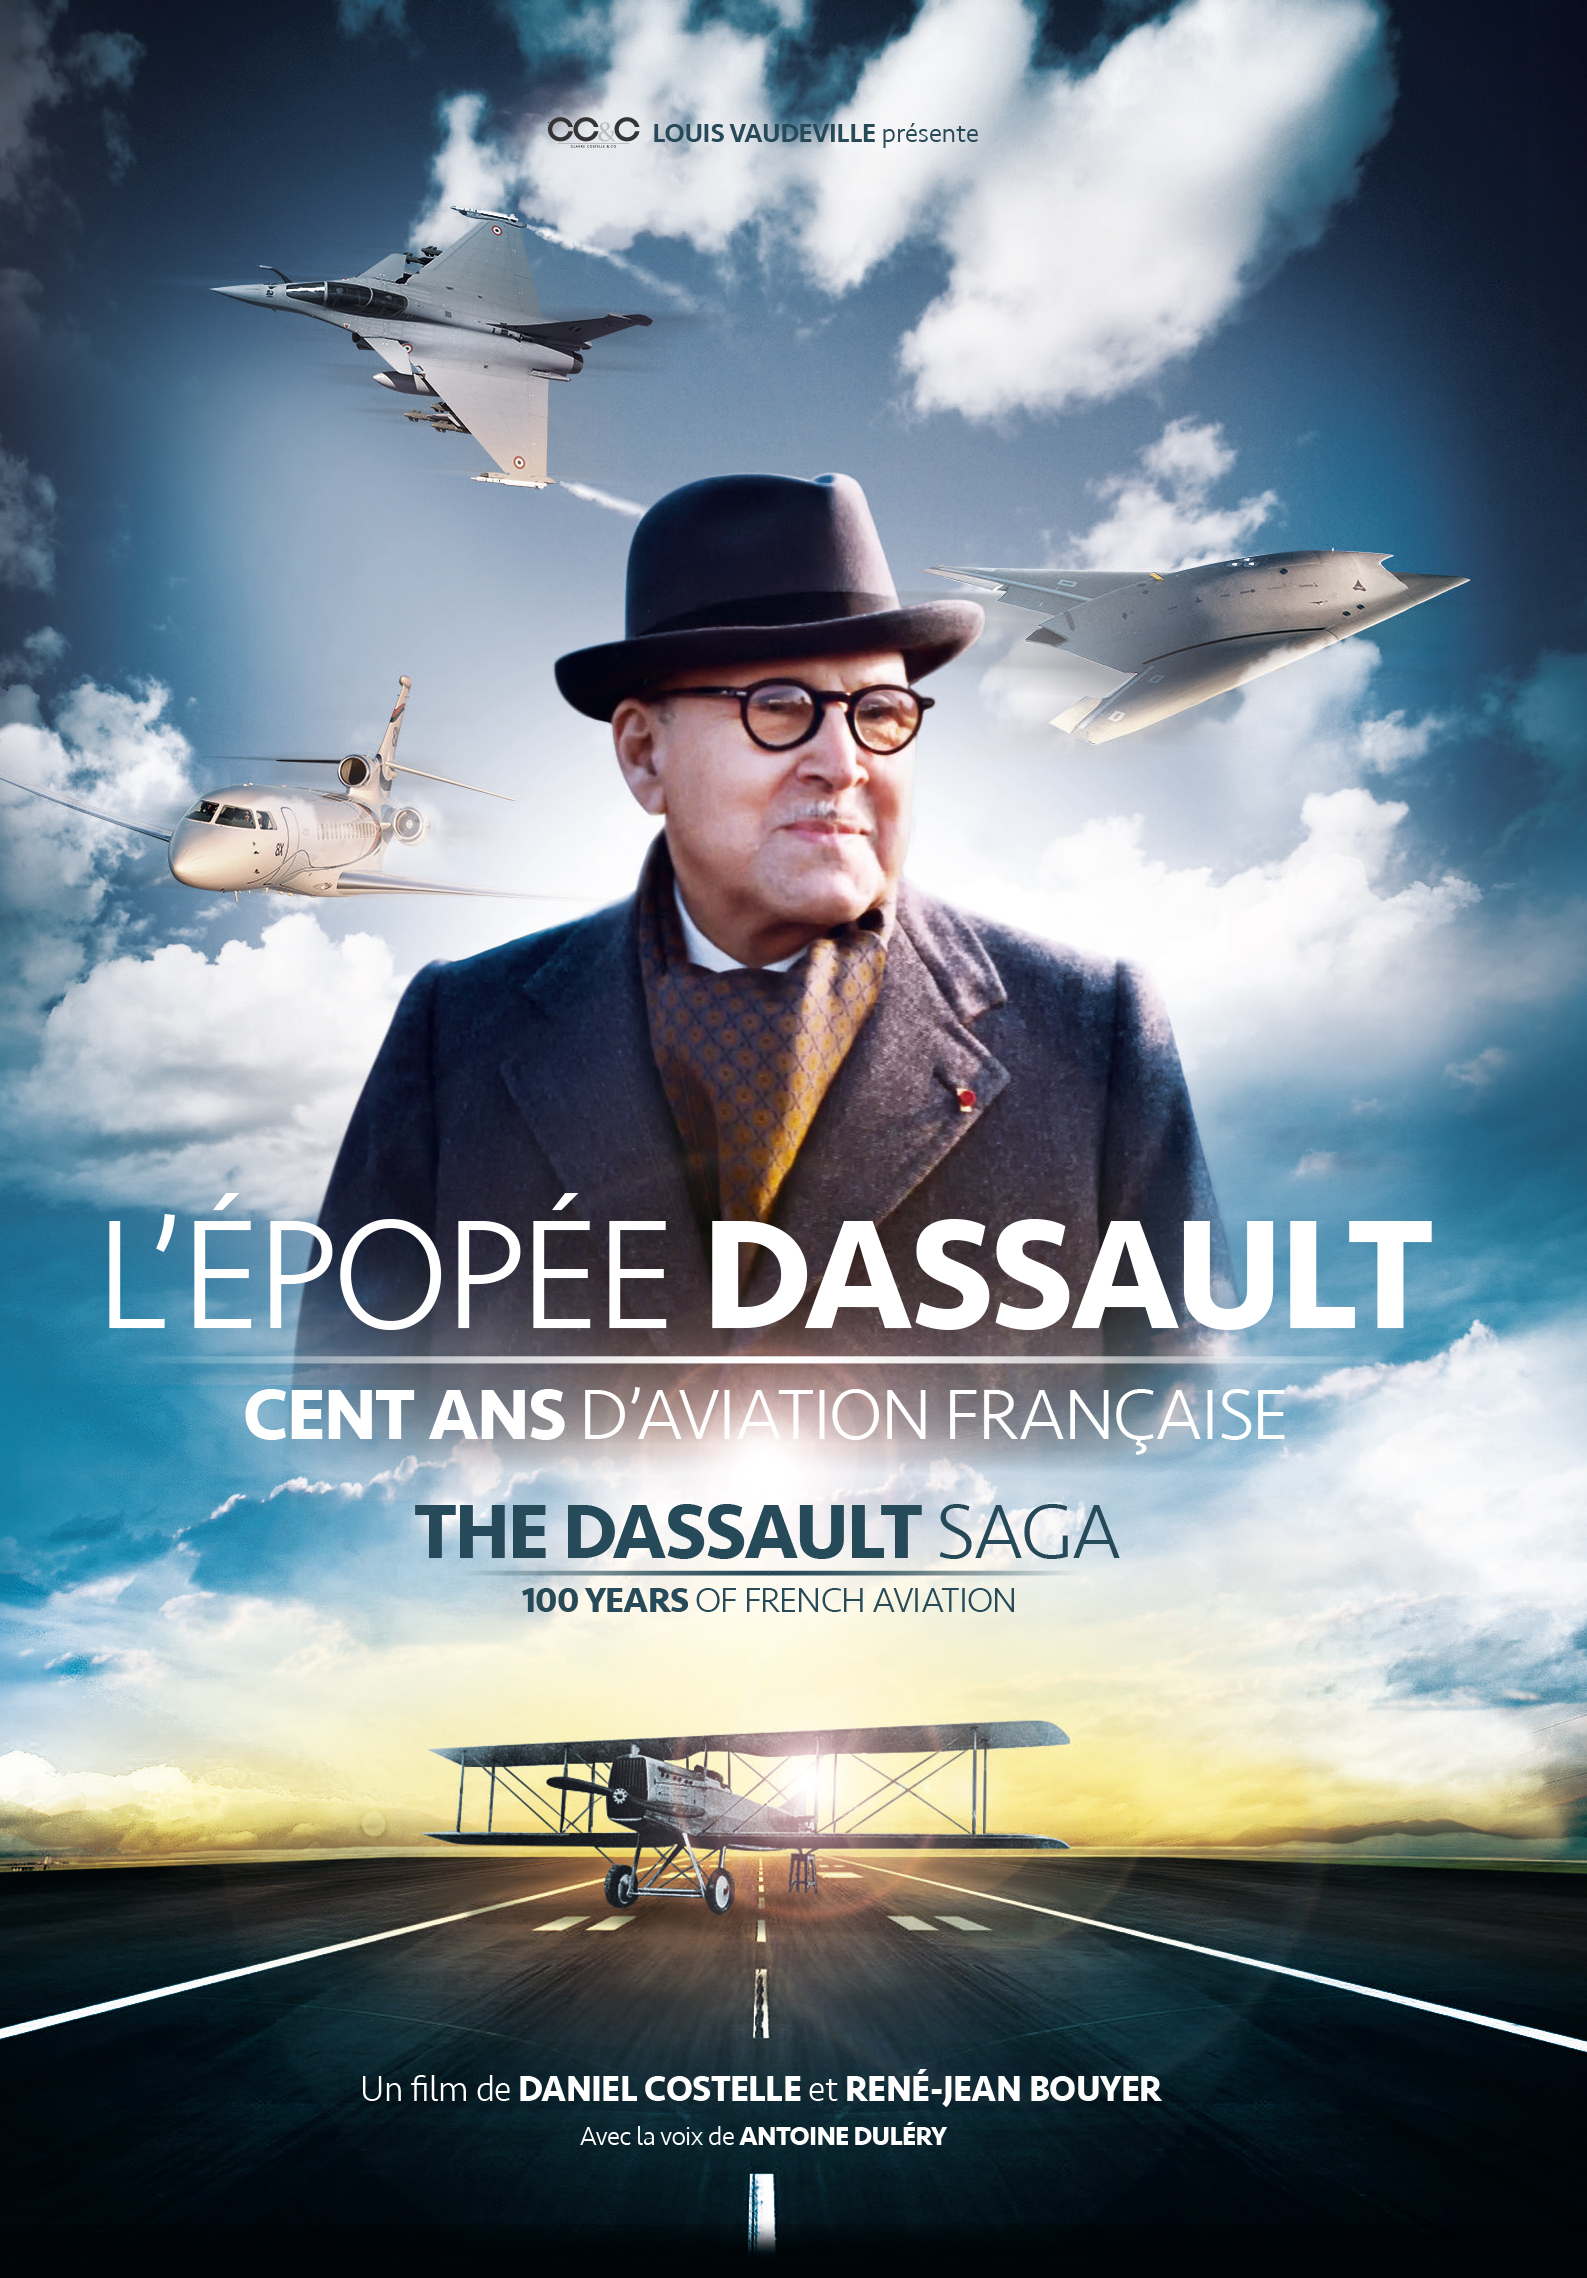 The Dassault Saga 100 Years of French Aviation